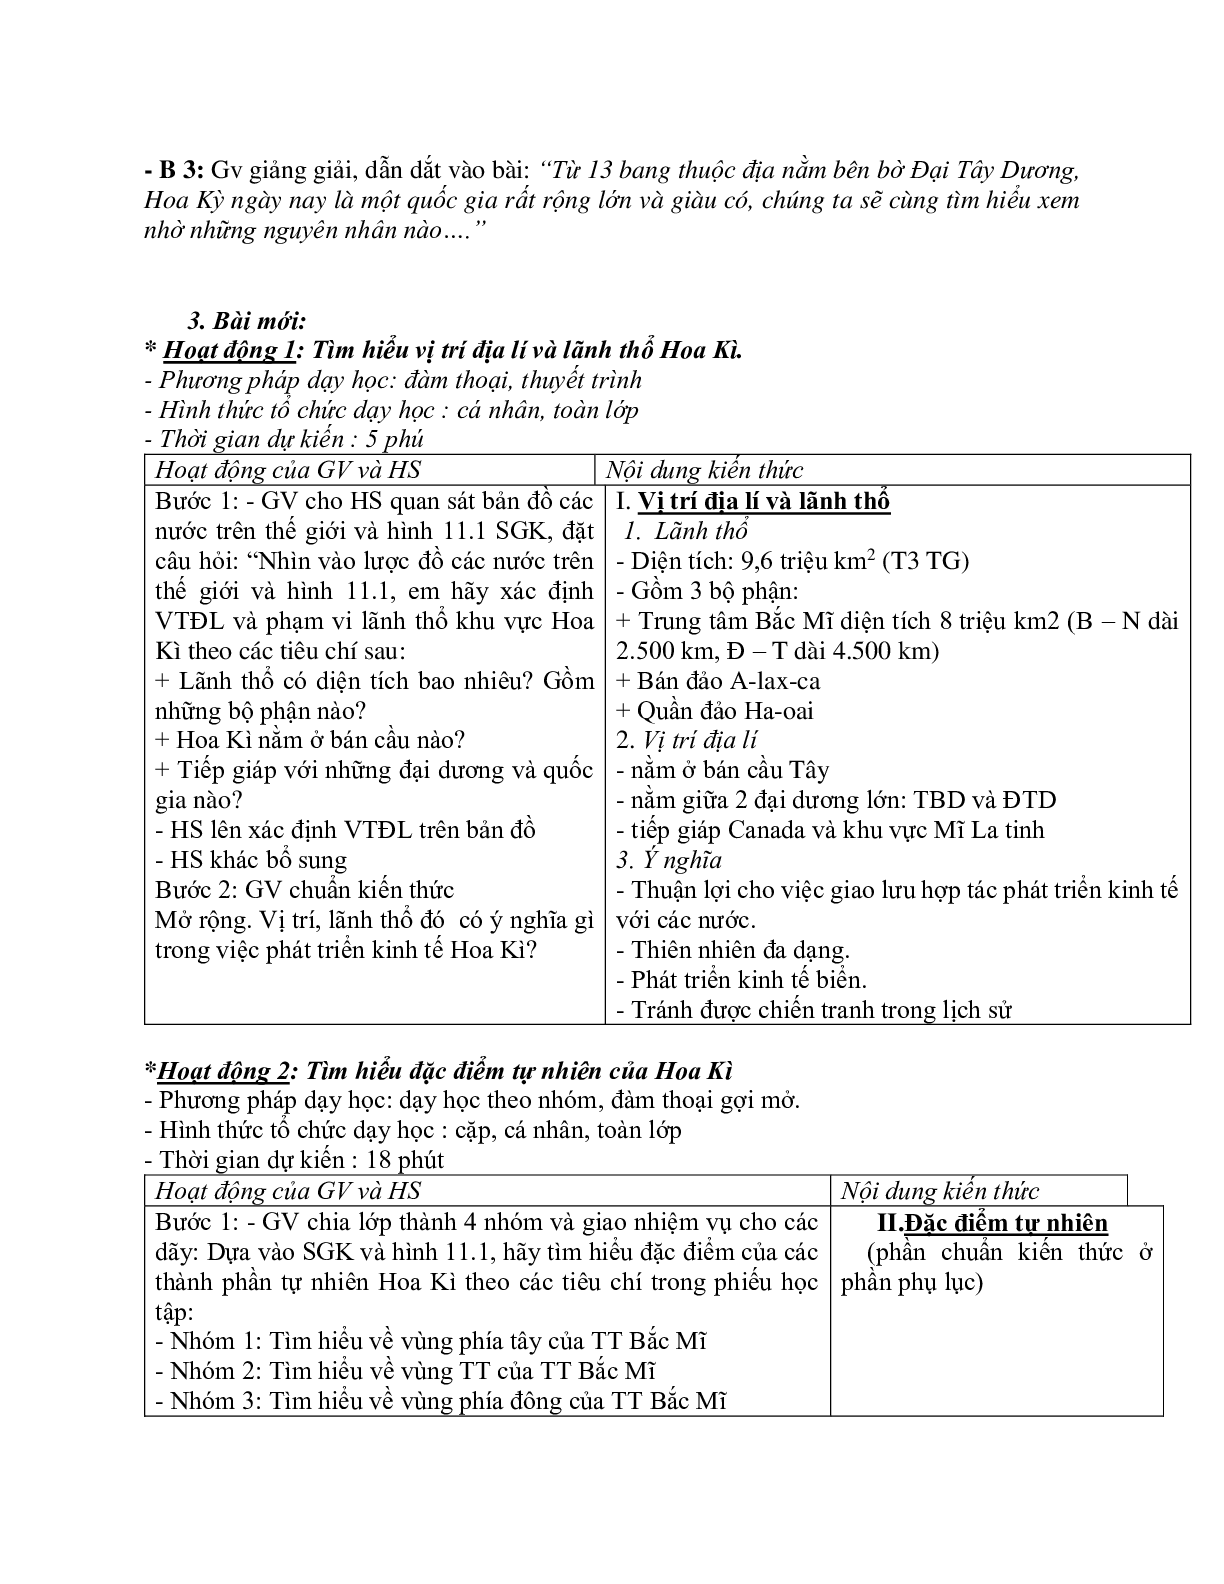 Giáo án Địa lí 11 Bài 6 Hợp chủng quốc Hoa Kì tiết 1 mới nhất (trang 2)